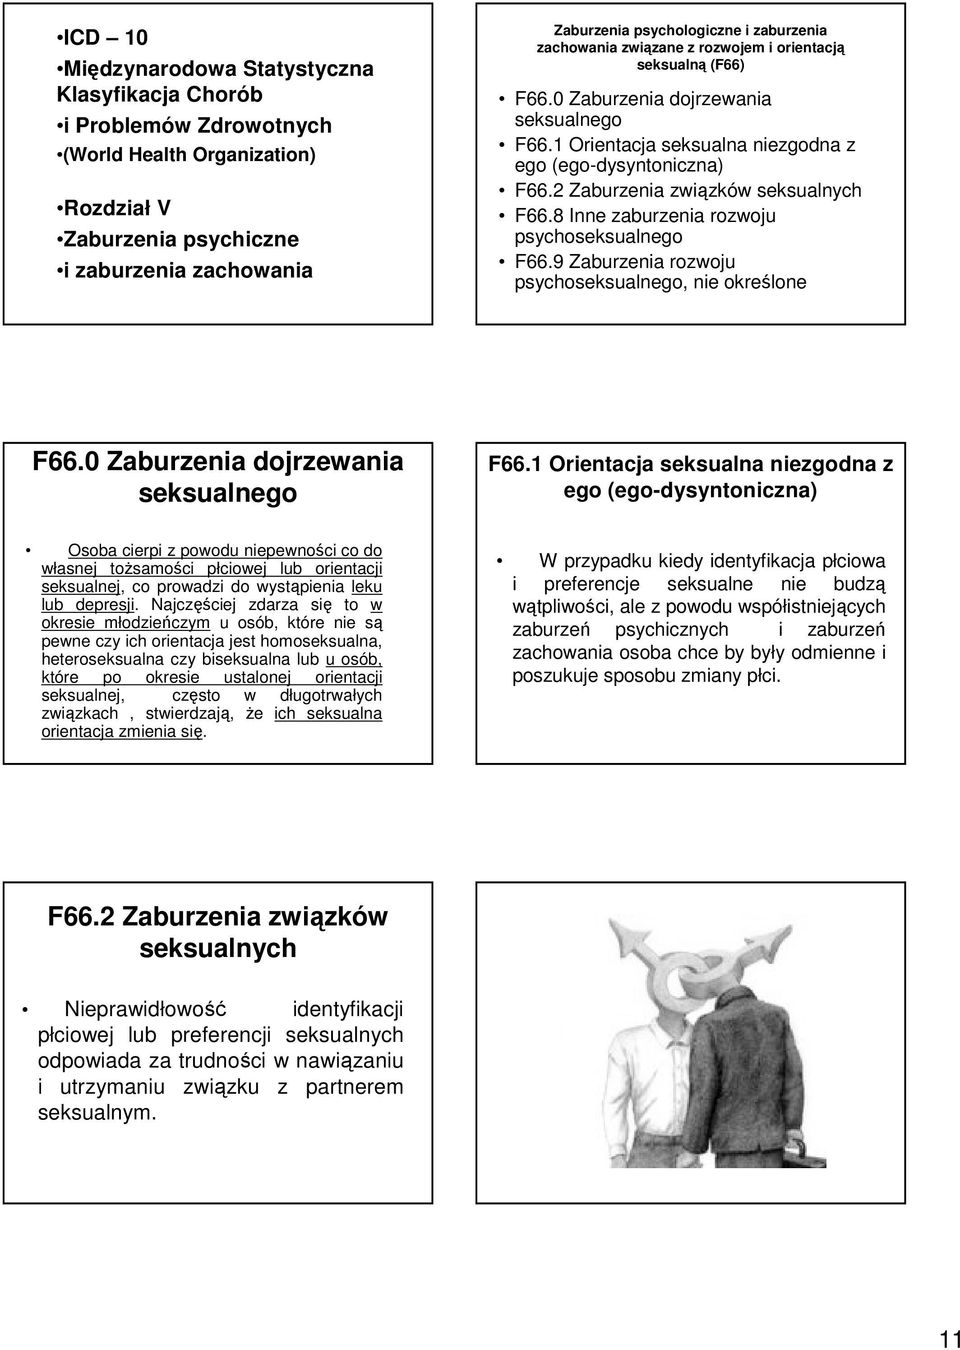 2 Zaburzenia związków seksualnych F66.8 Inne zaburzenia rozwoju psychoseksualnego F66.9 Zaburzenia rozwoju psychoseksualnego, nie określone F66.0 Zaburzenia dojrzewania seksualnego F66.